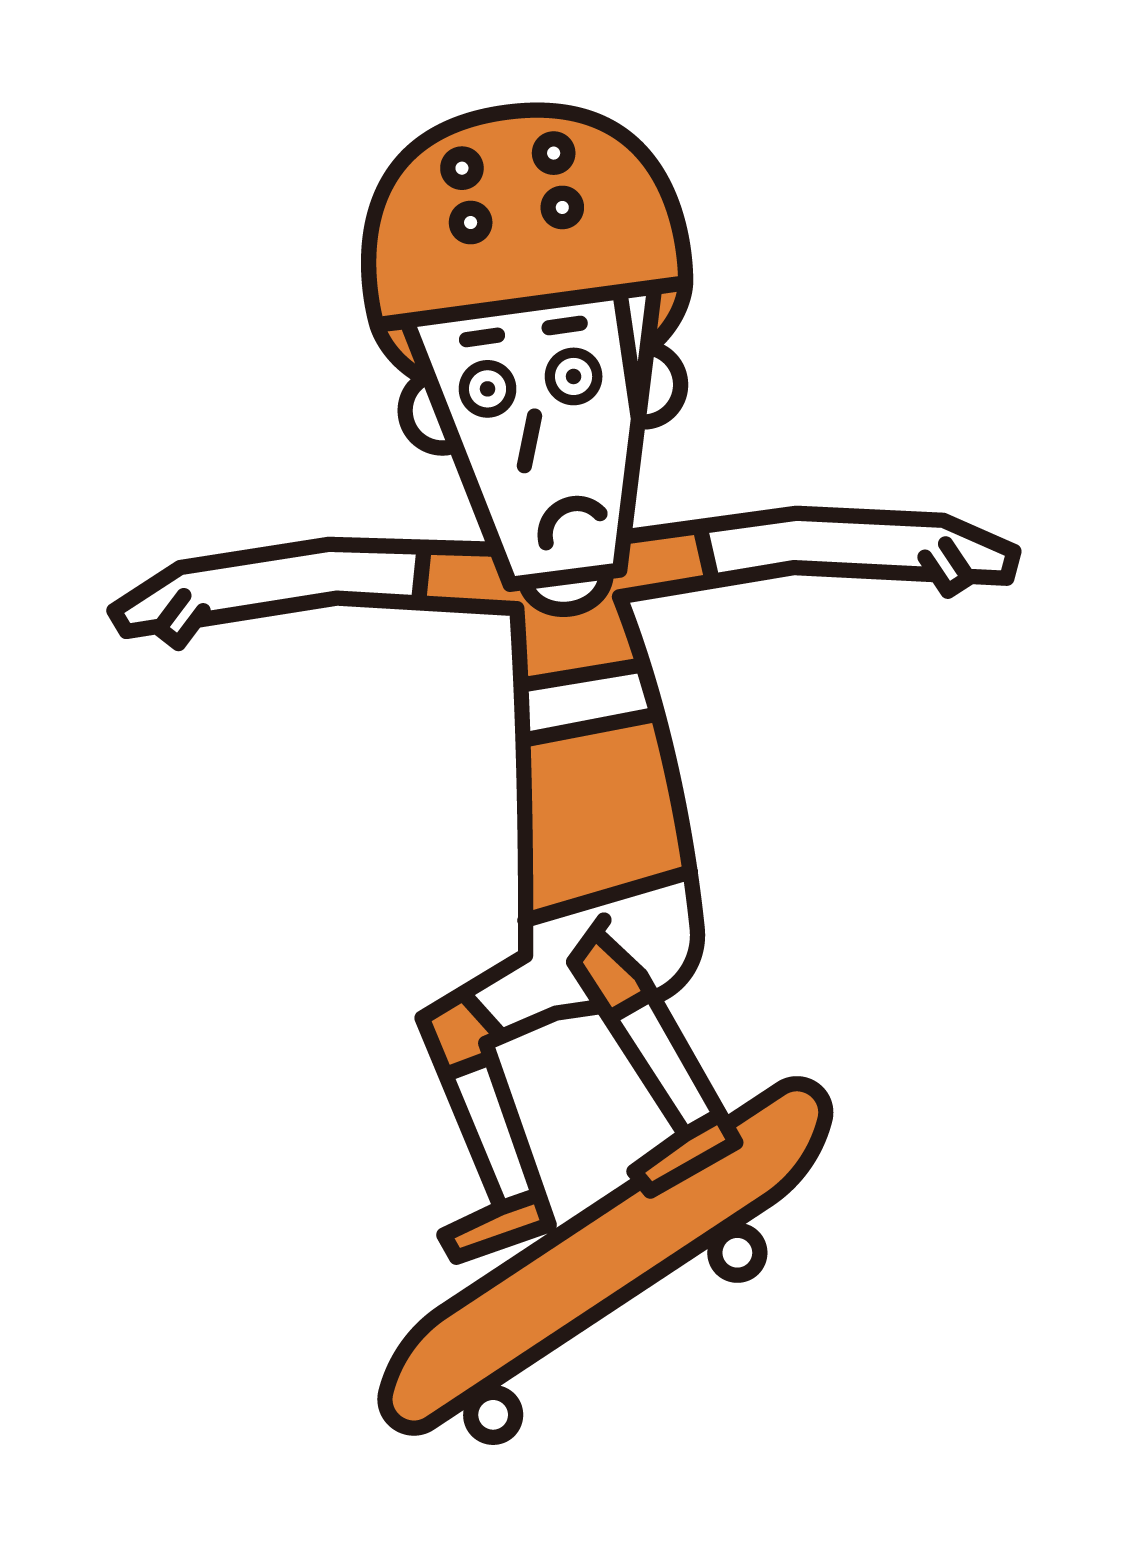 스케이트보드에 점프하는 선수(남성)의 일러스트